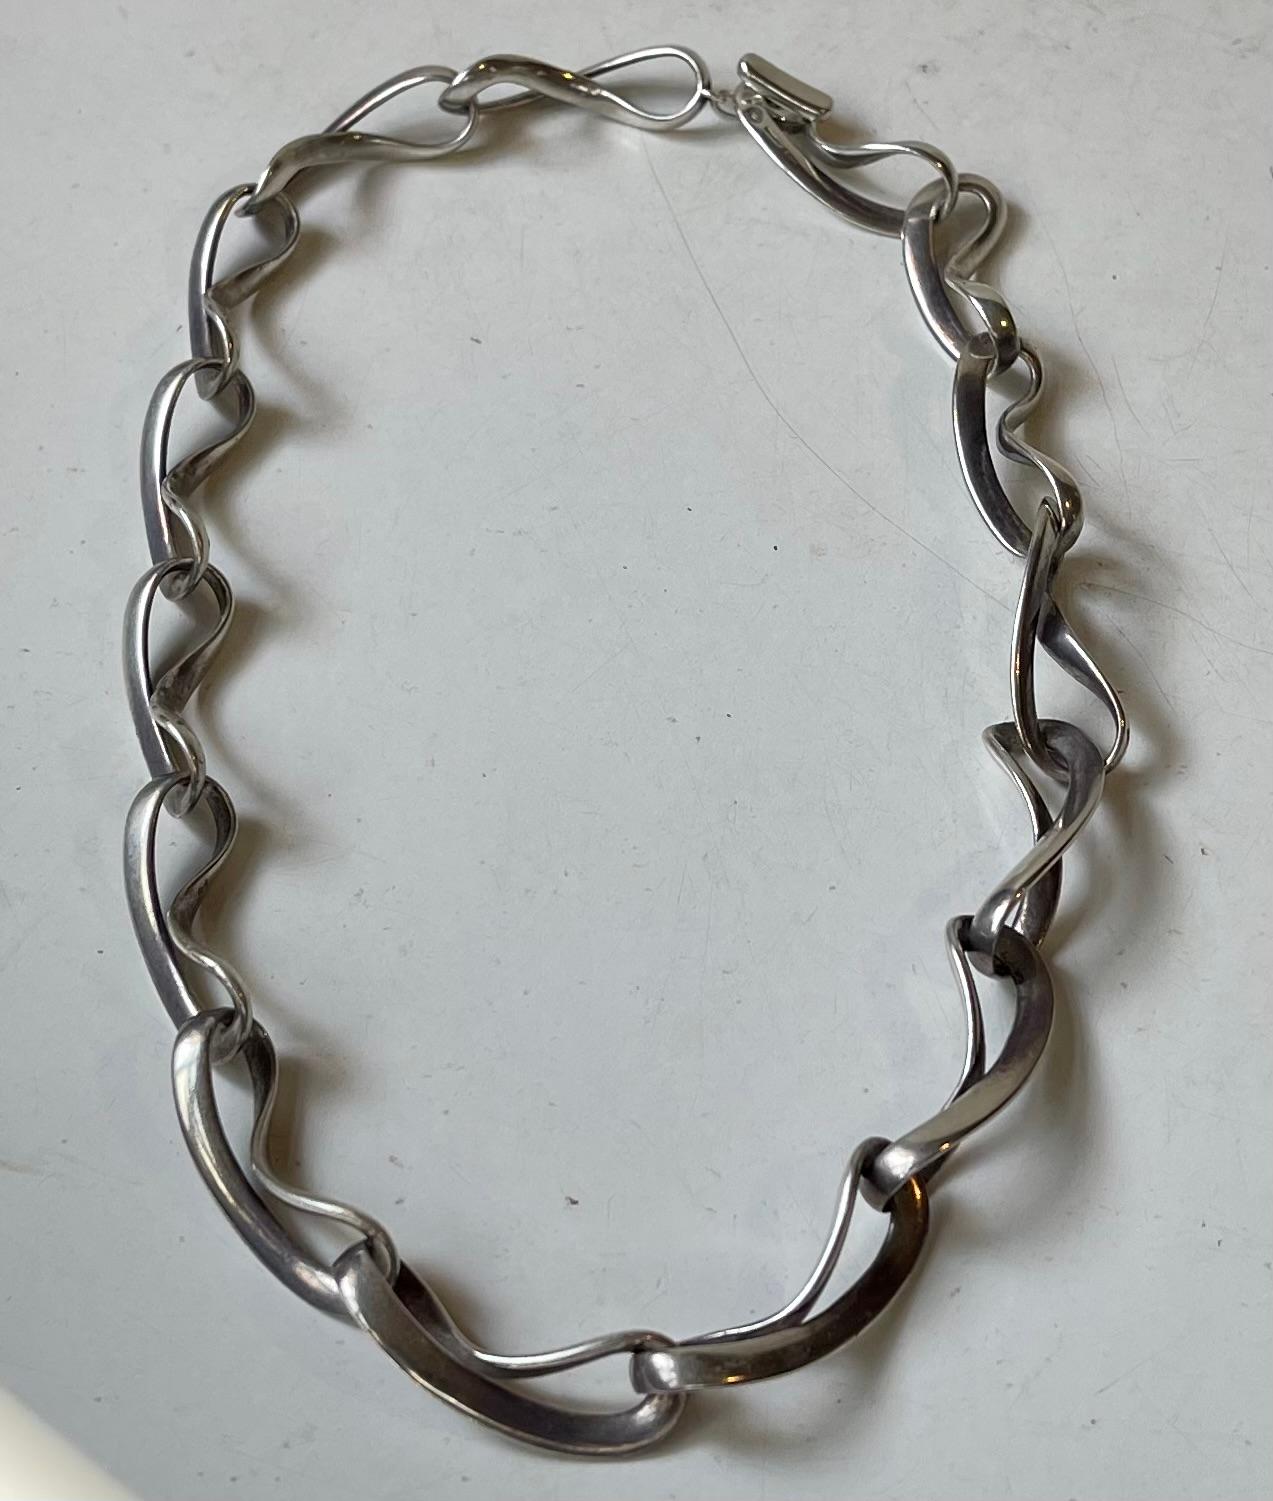 Georg Jensen Sterling Silber Halskette Nummer 452. Es heißt INFINITY und wurde 2004 von Regitze Overgaard entworfen. Das vorliegende Stück stammt aus dieser ersten Serie. Es besteht aus 15 Gliedern in Form der Zahl 8, die die Unendlichkeit